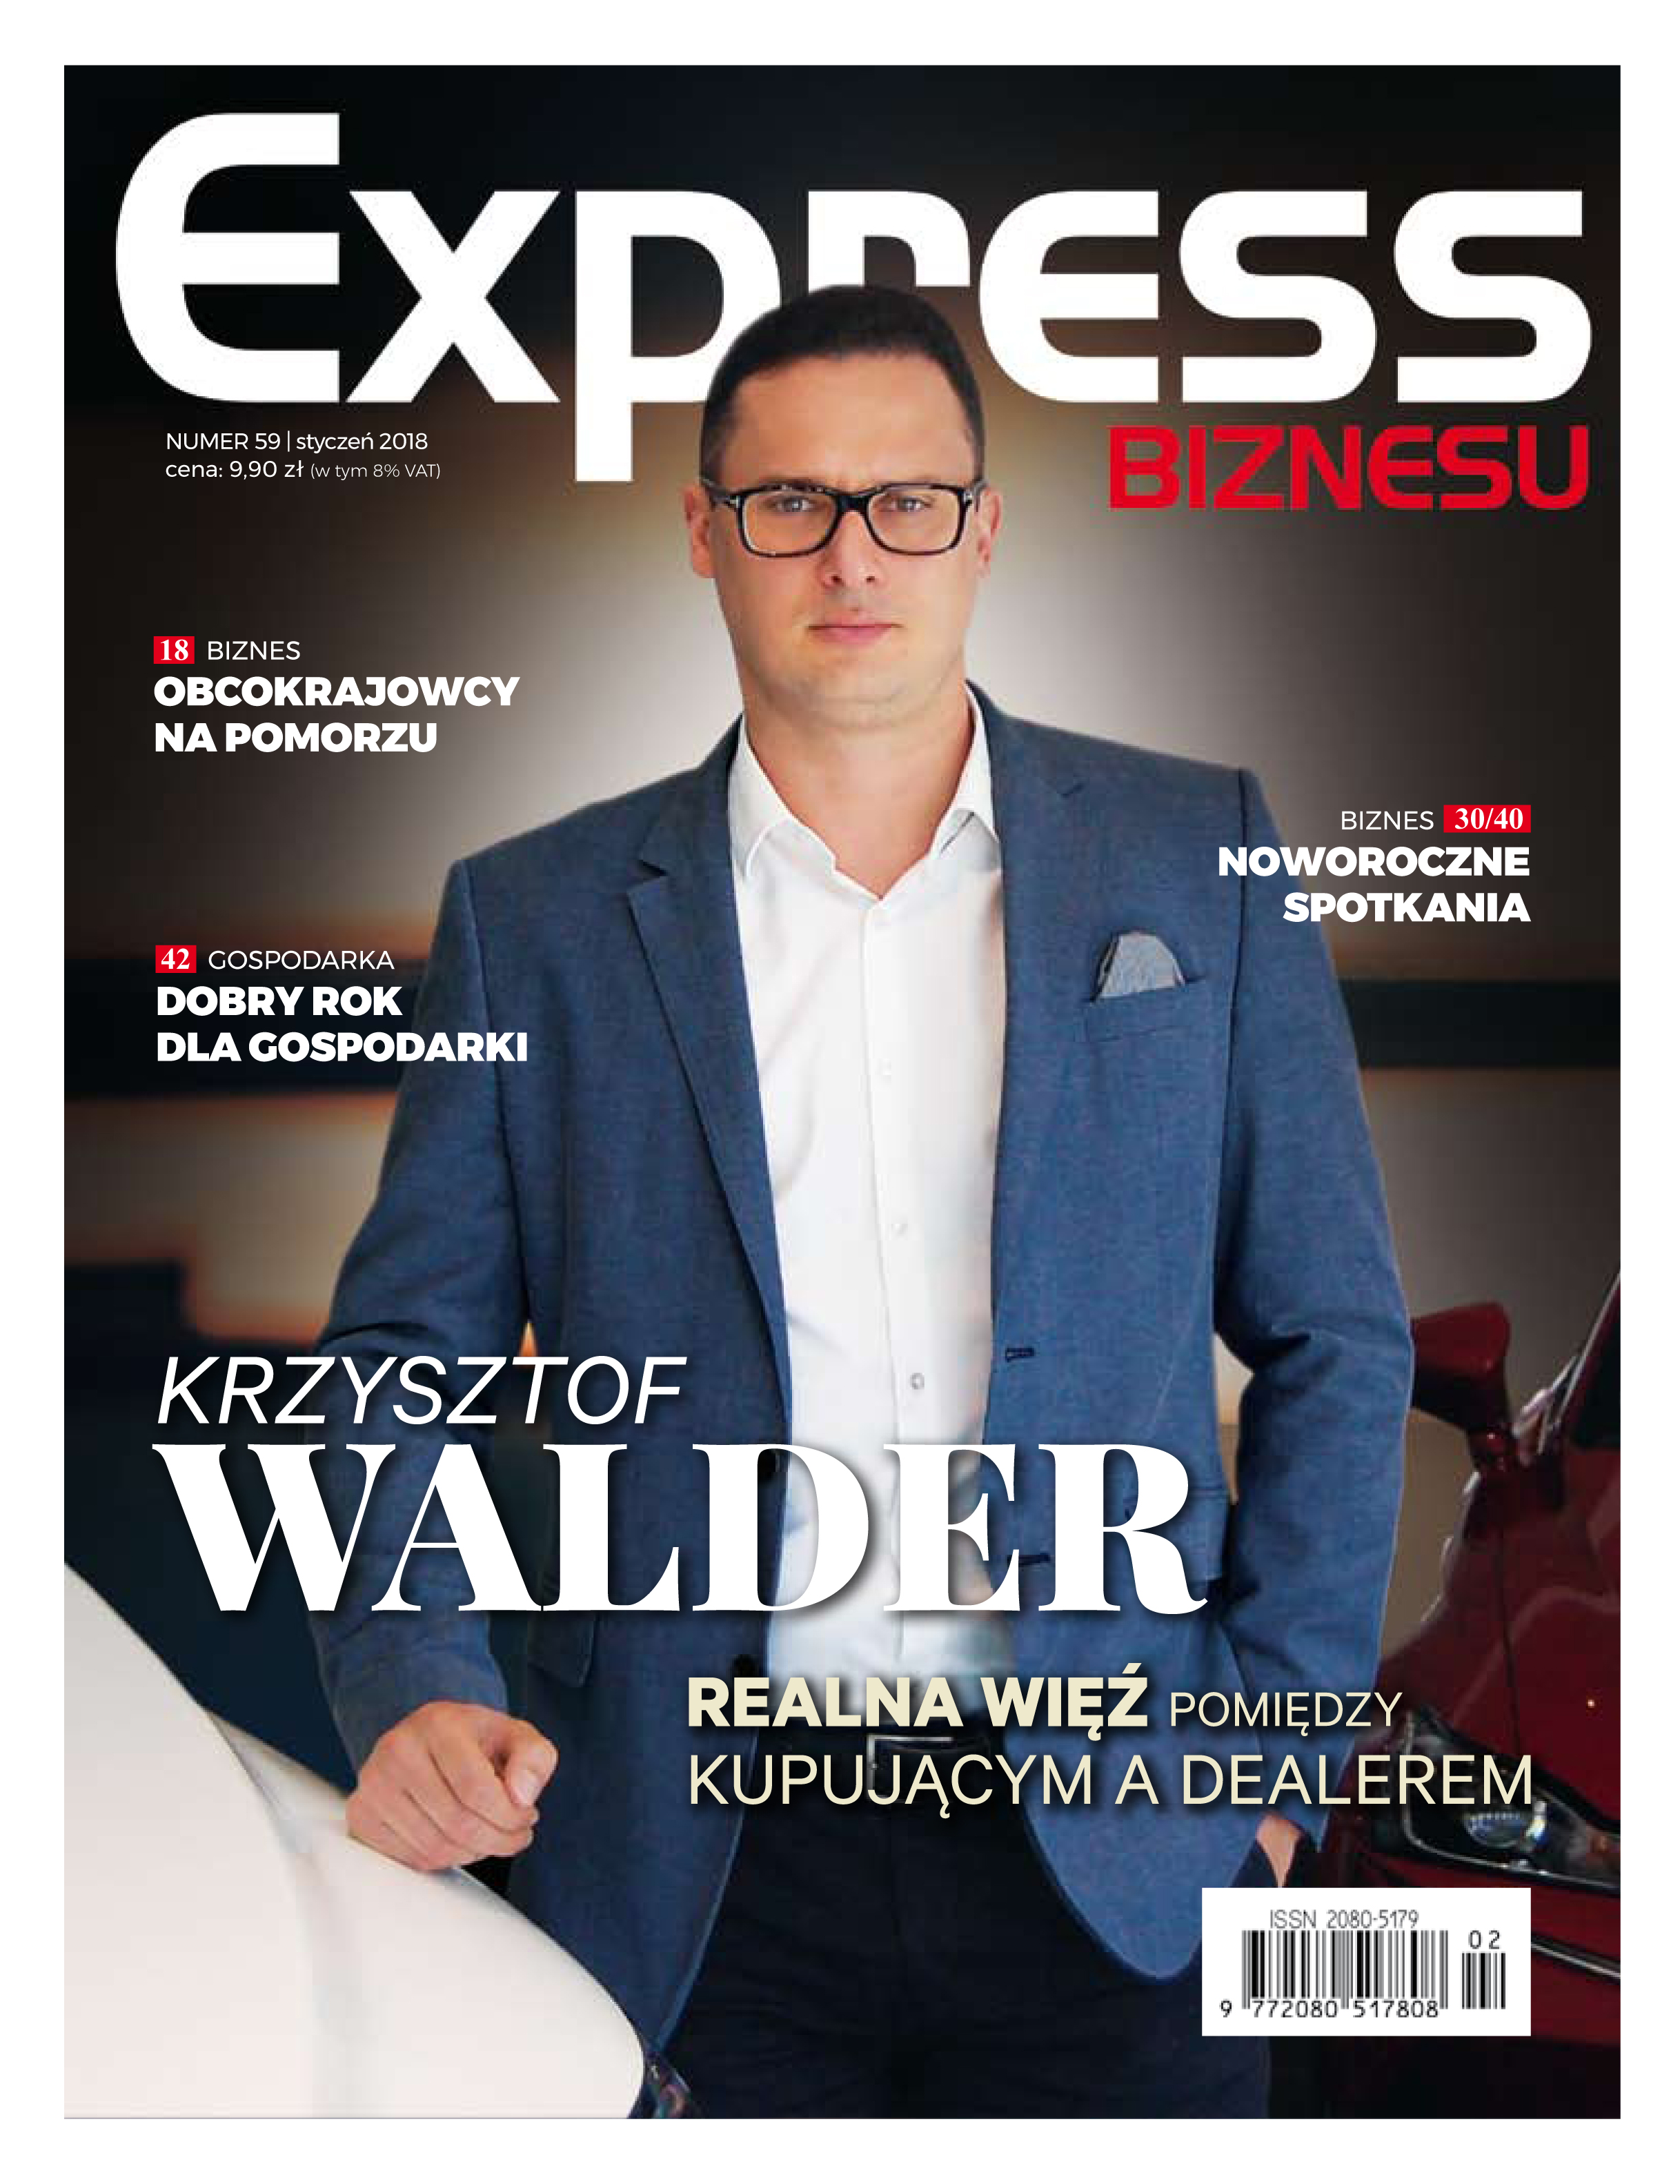 Express Biznesu - nr. 59.pdf